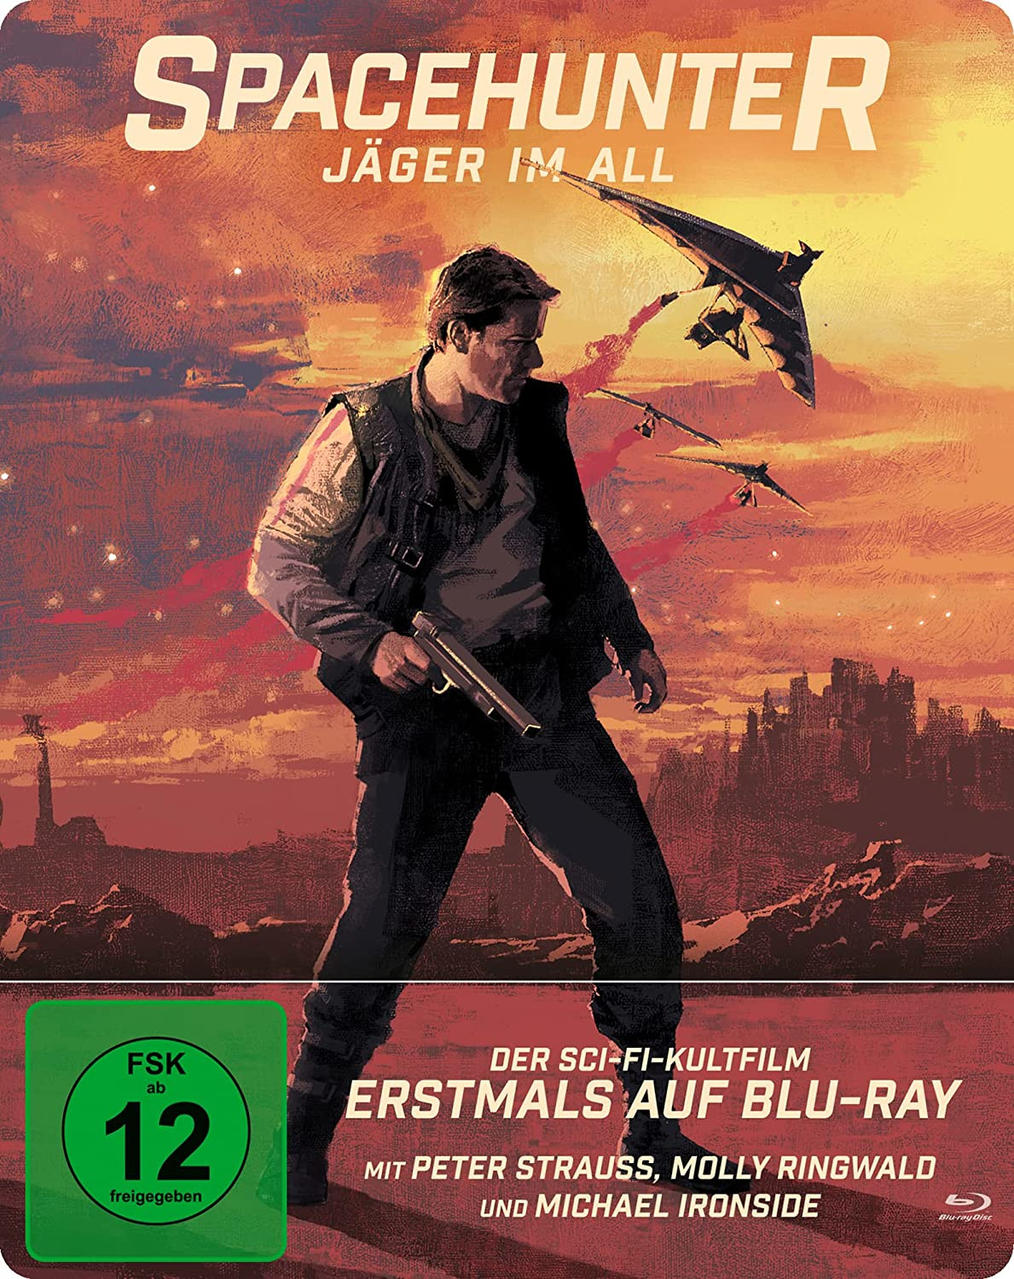 Spacehunter - Jäger All im Blu-ray